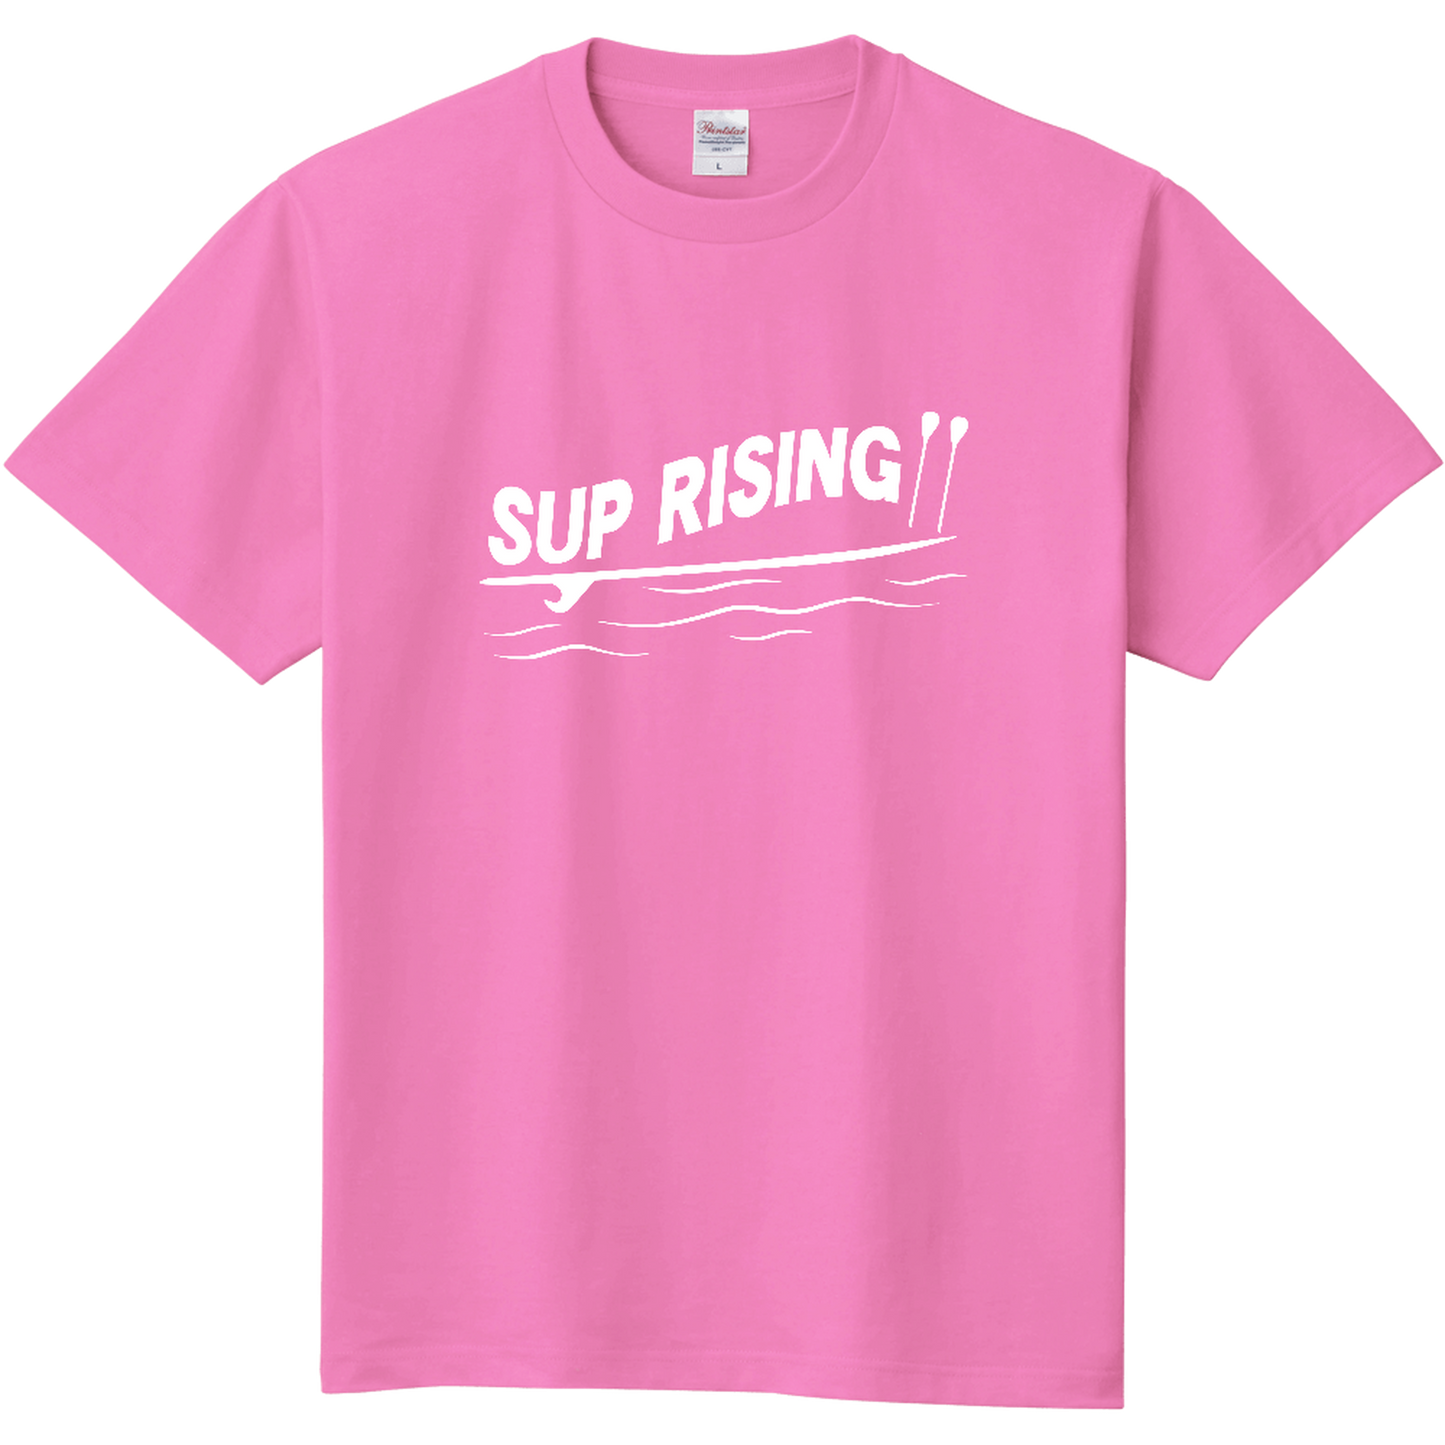 【完全受注生産】sup rising チャリティーTシャツ(Kids 110cm)